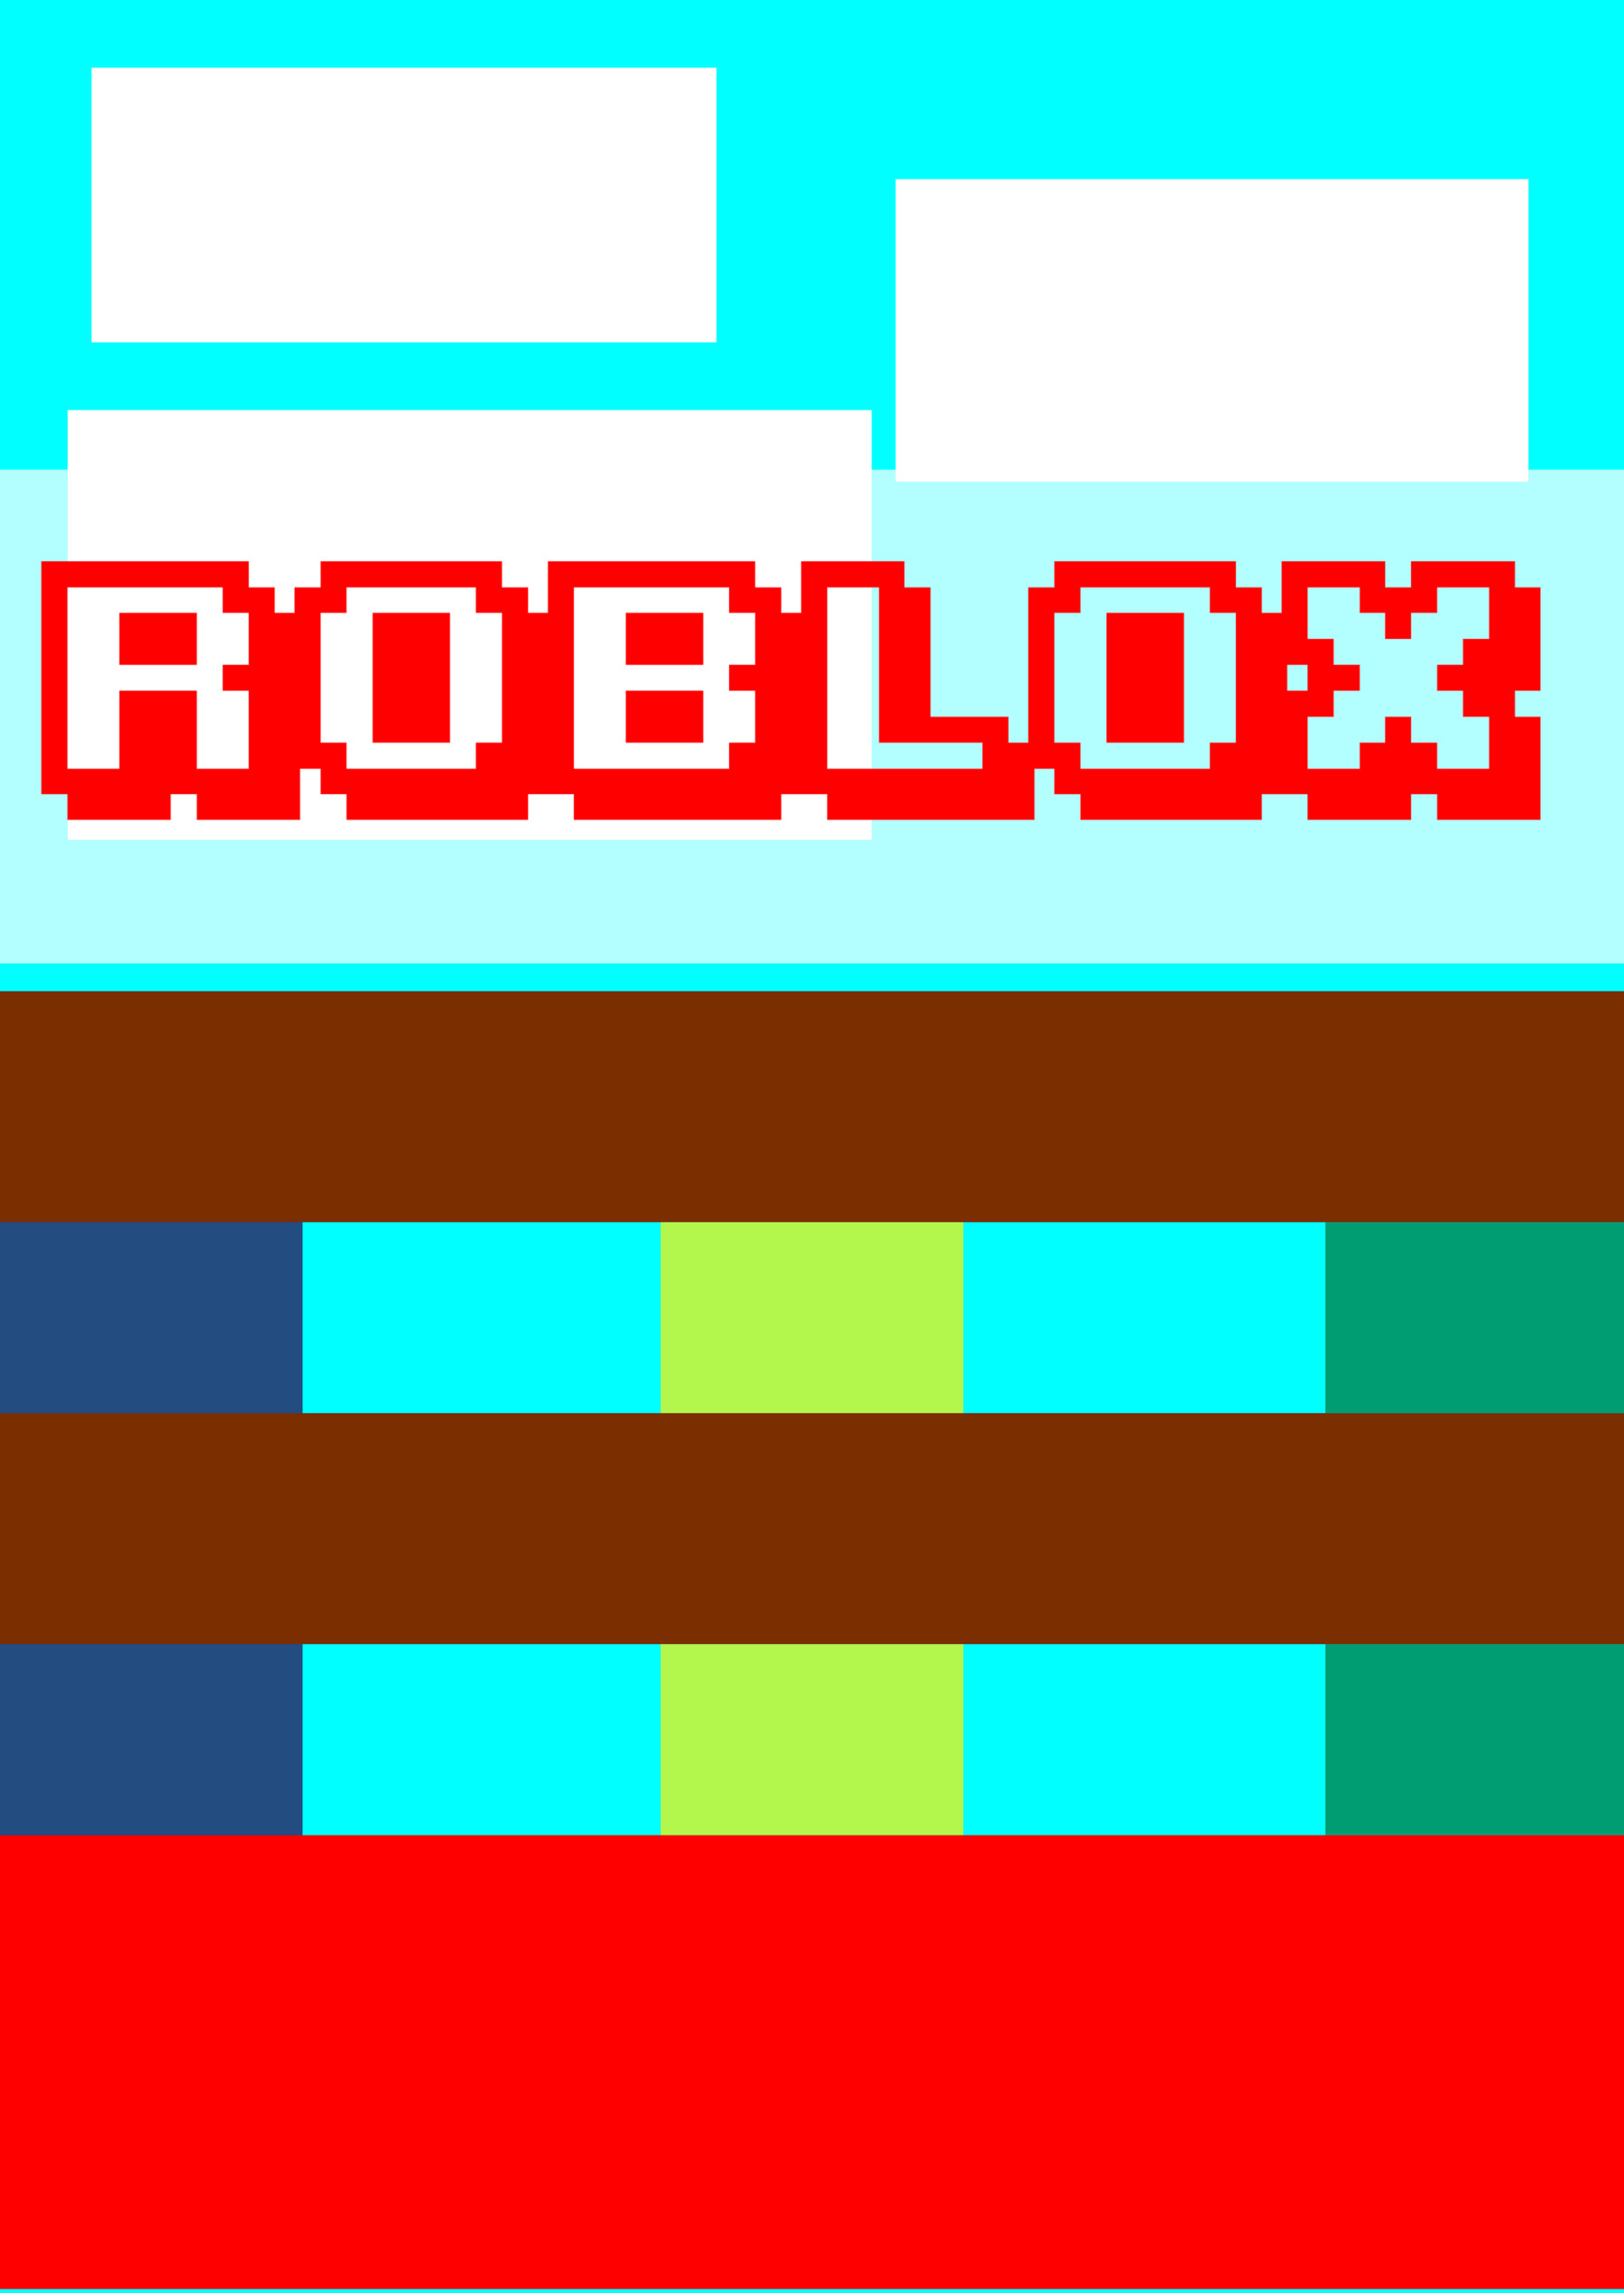 ArtStation - Robux